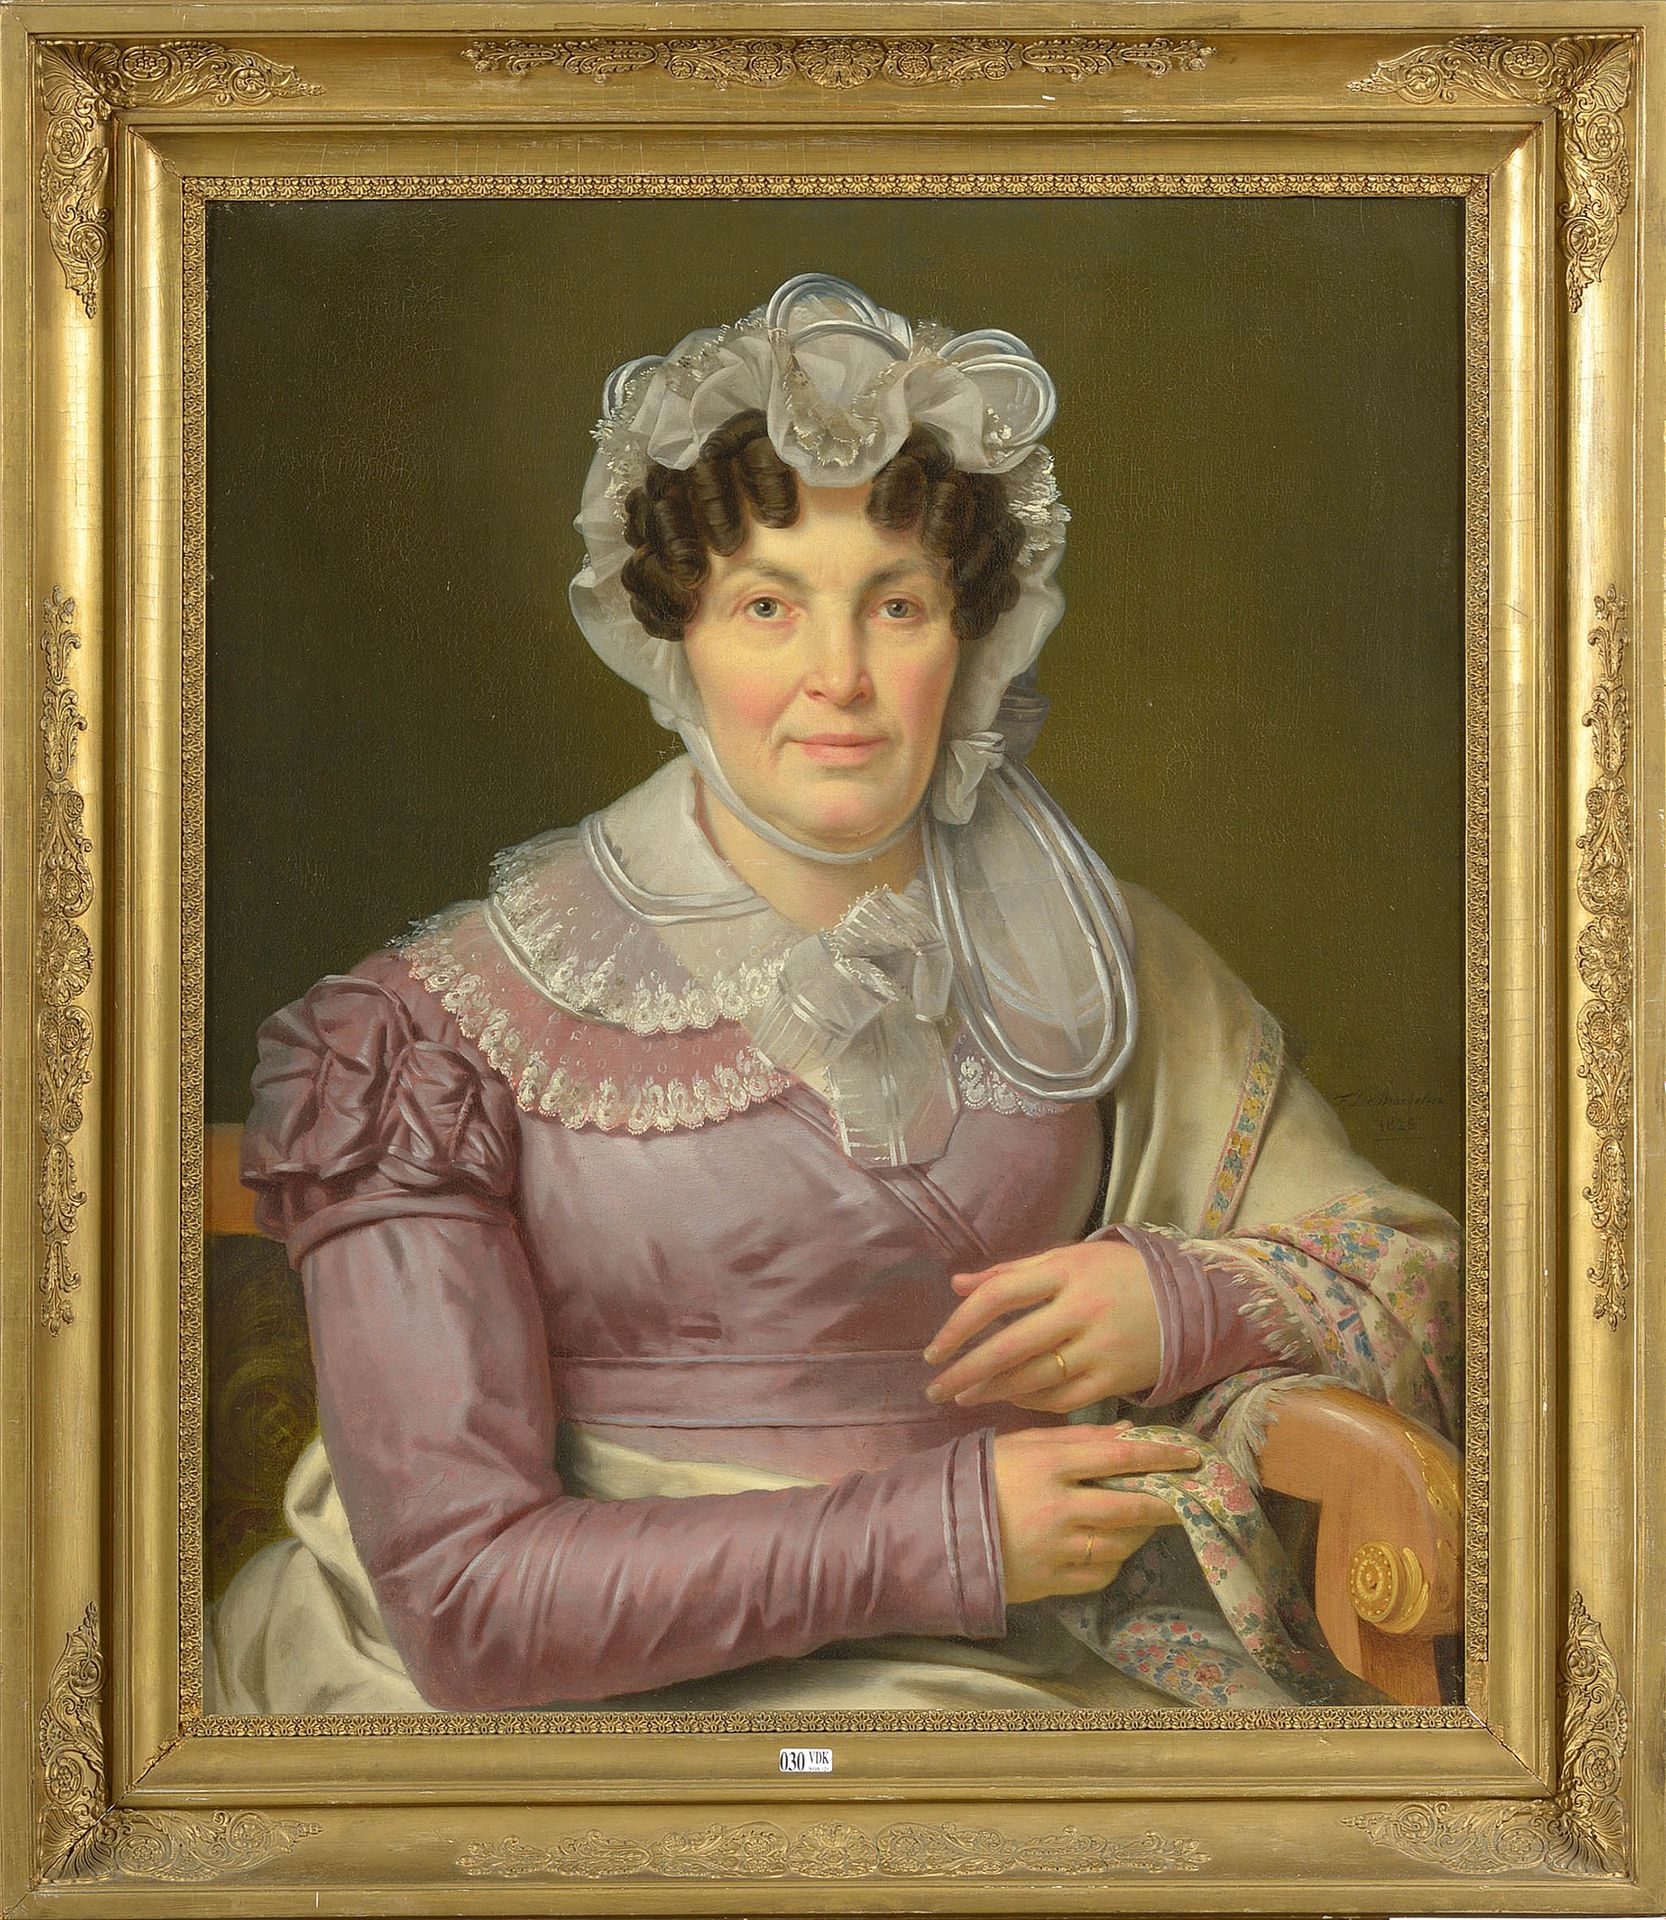 DE BRAEKELEER Ferdinand I (1792 - 1883) 镶嵌在画布上的油画《一个女人的肖像》。右侧有F. De Braekeleer的签&hellip;